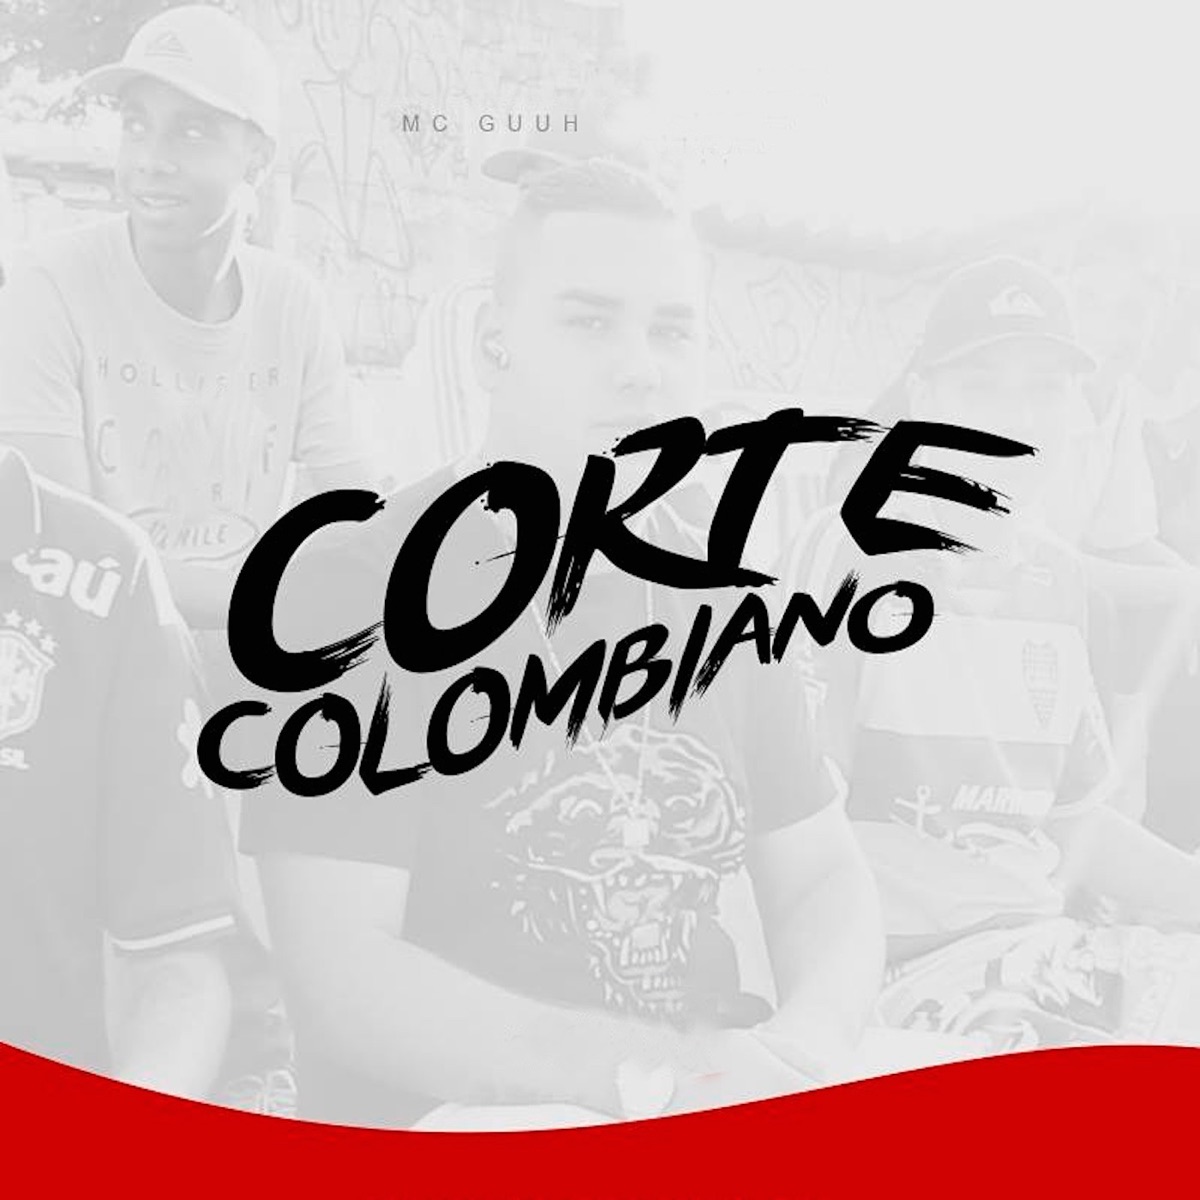 Corte Colombiano - Single - Album by MC Guuh - Apple Music